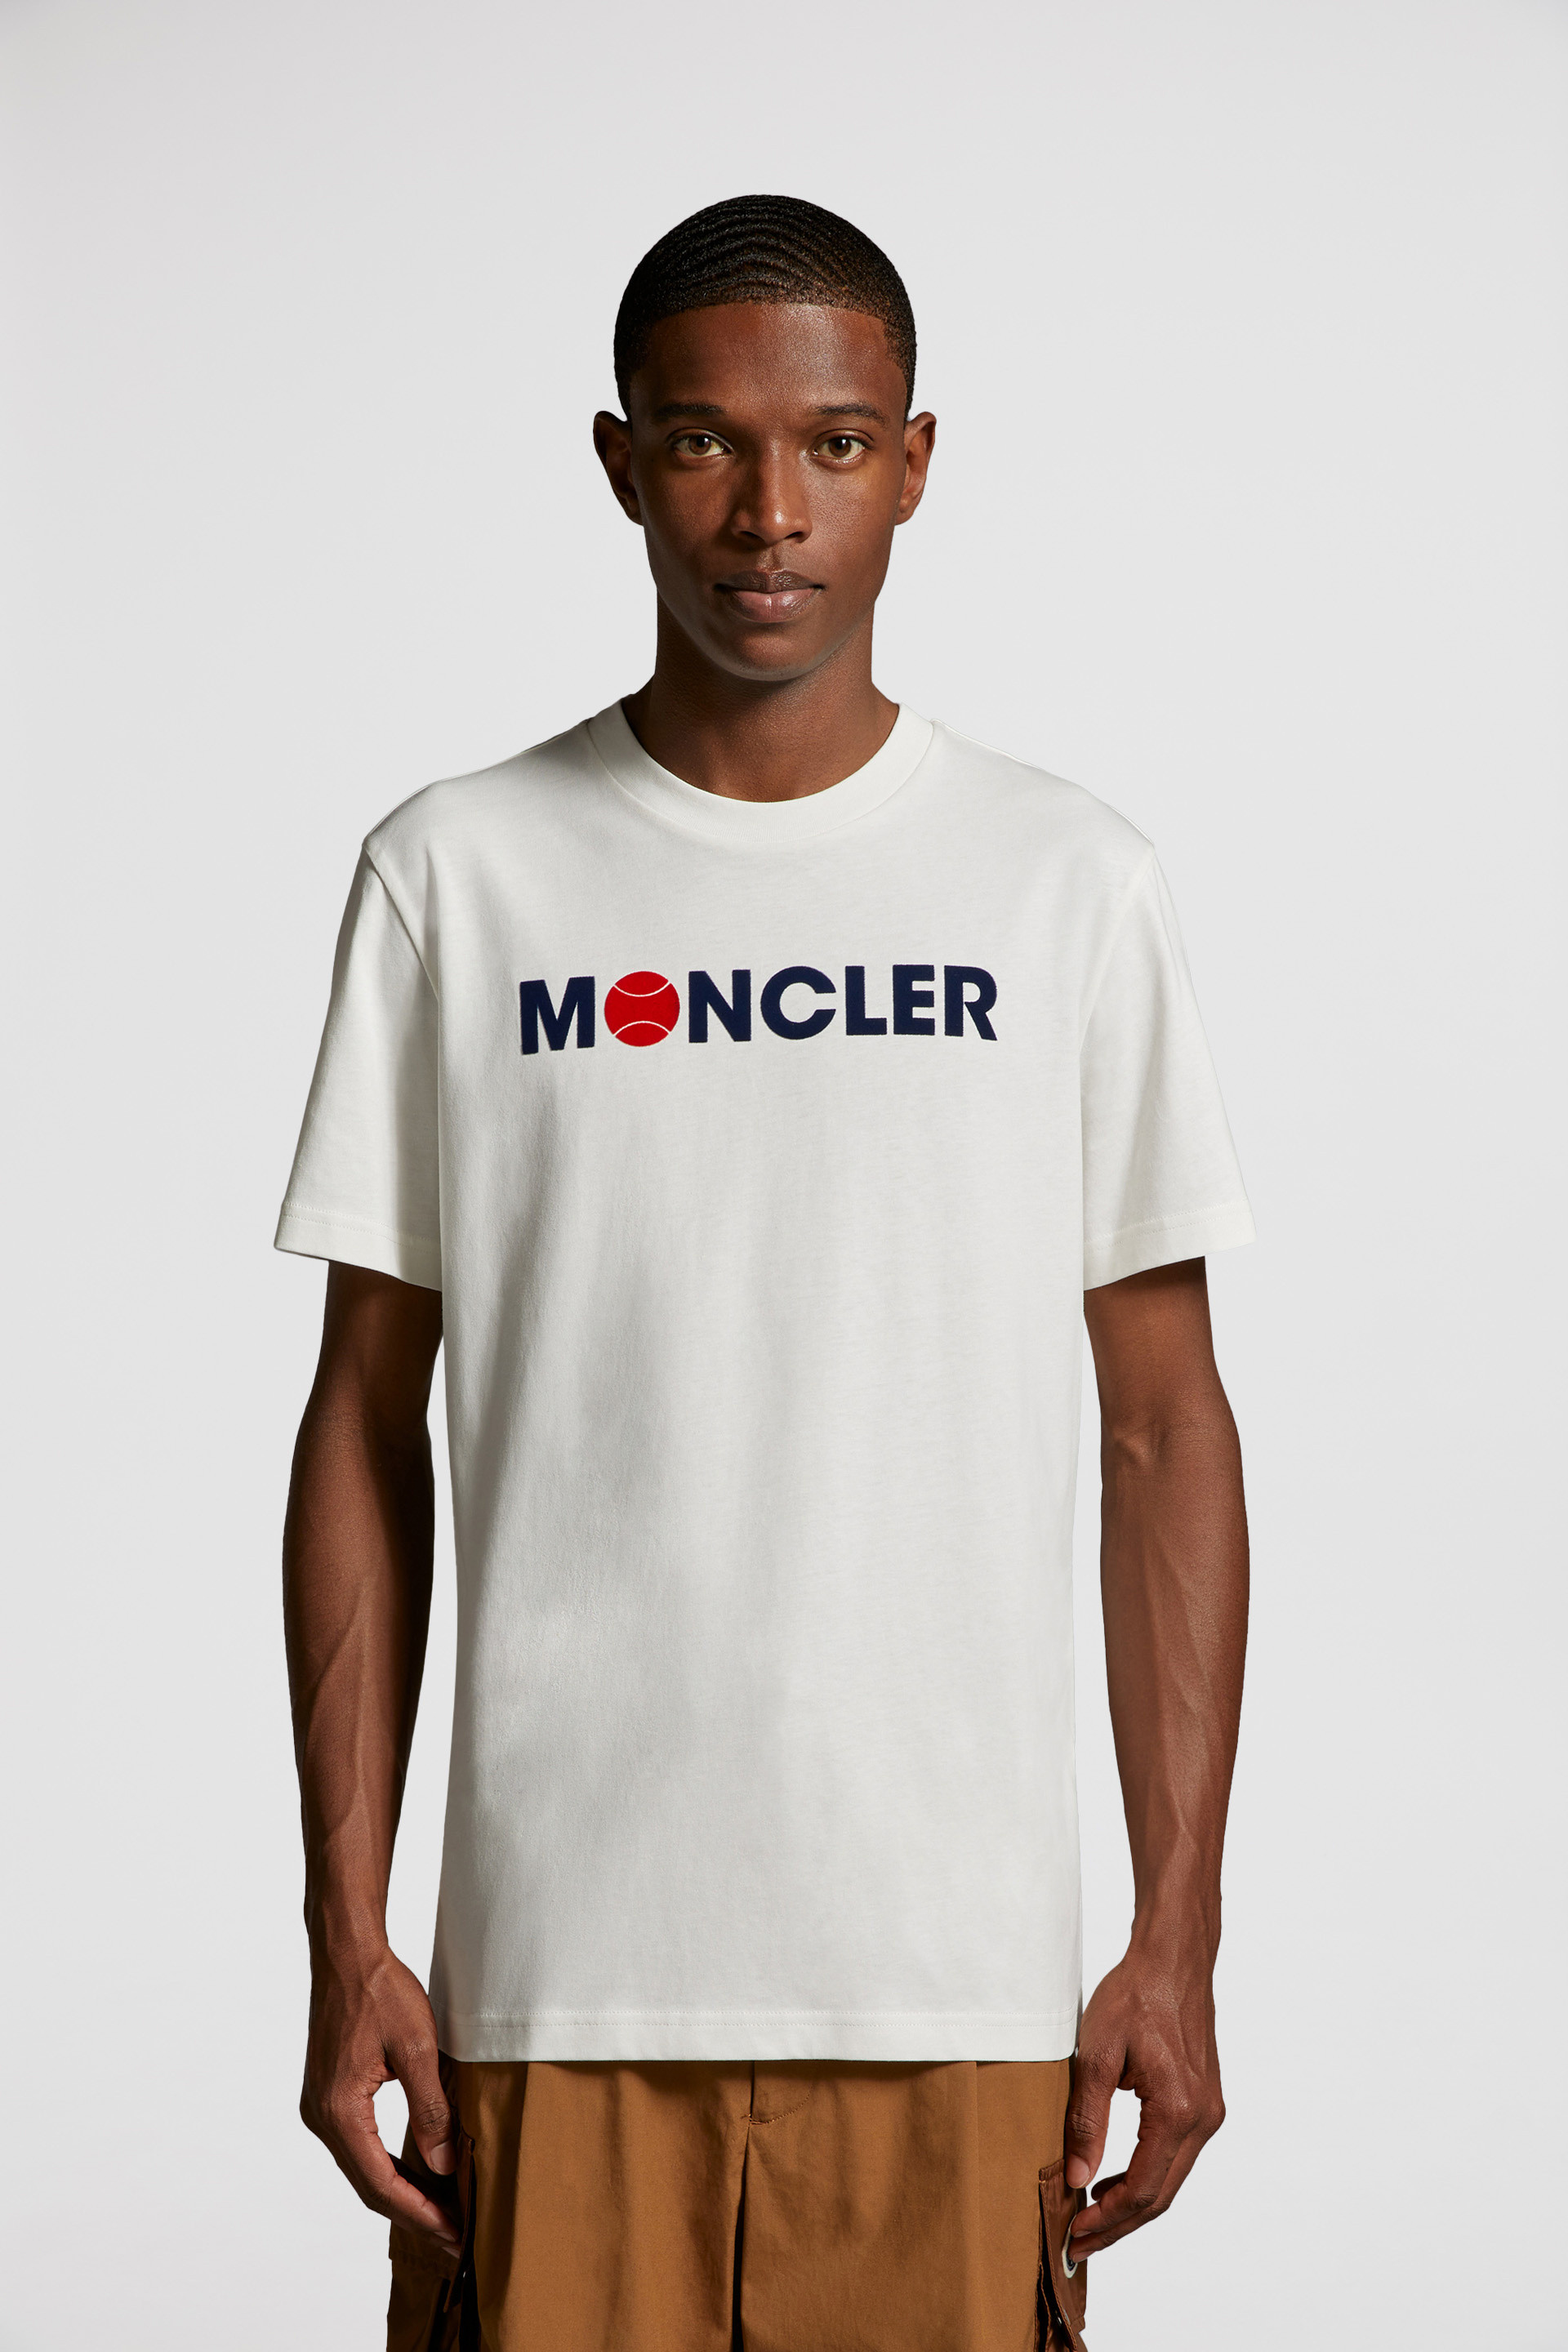 MONCLER モンクレール バイカラー Tシャツ XXLサイズ 大きめ 白 黒 